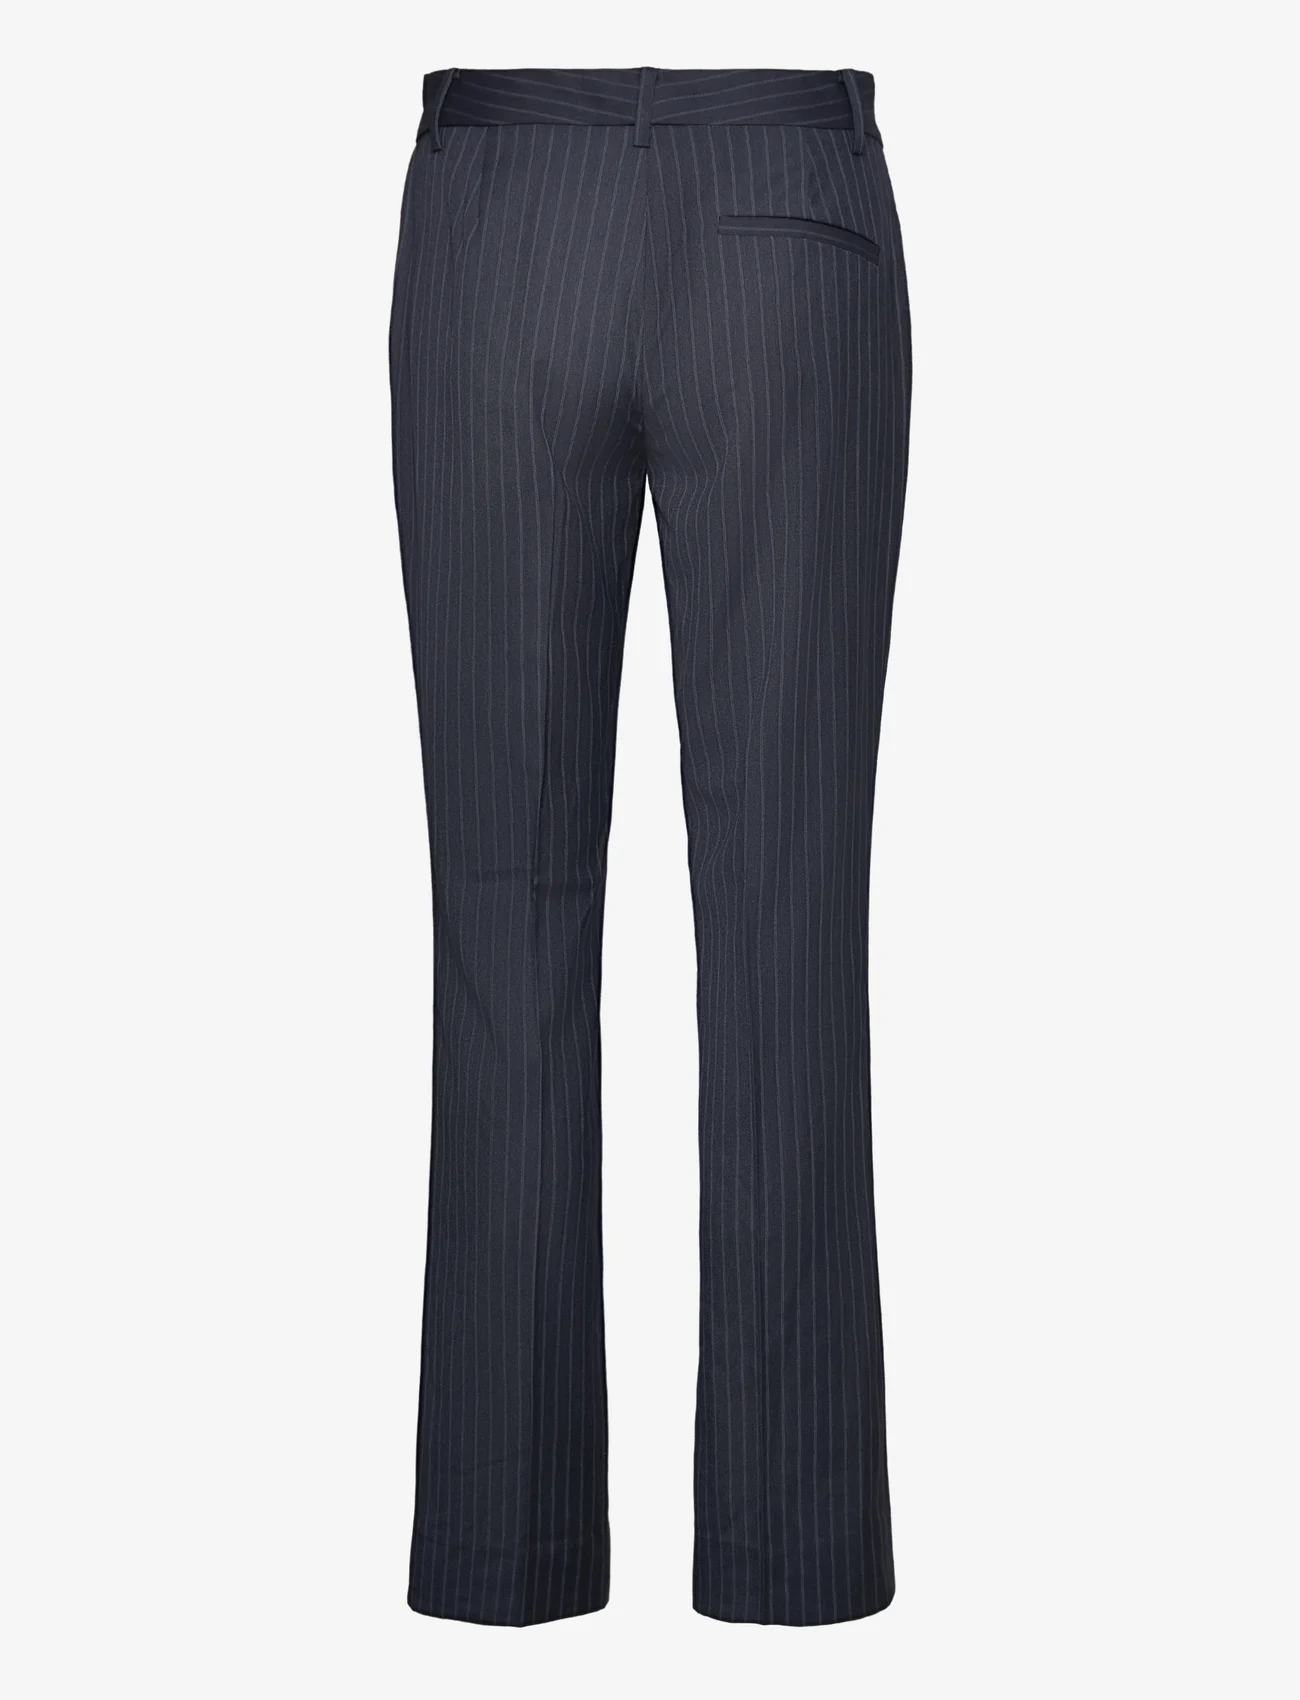 Bruuns Bazaar - Bluestar Linora pants - dalykinio stiliaus kelnės - blue pinstripe - 1